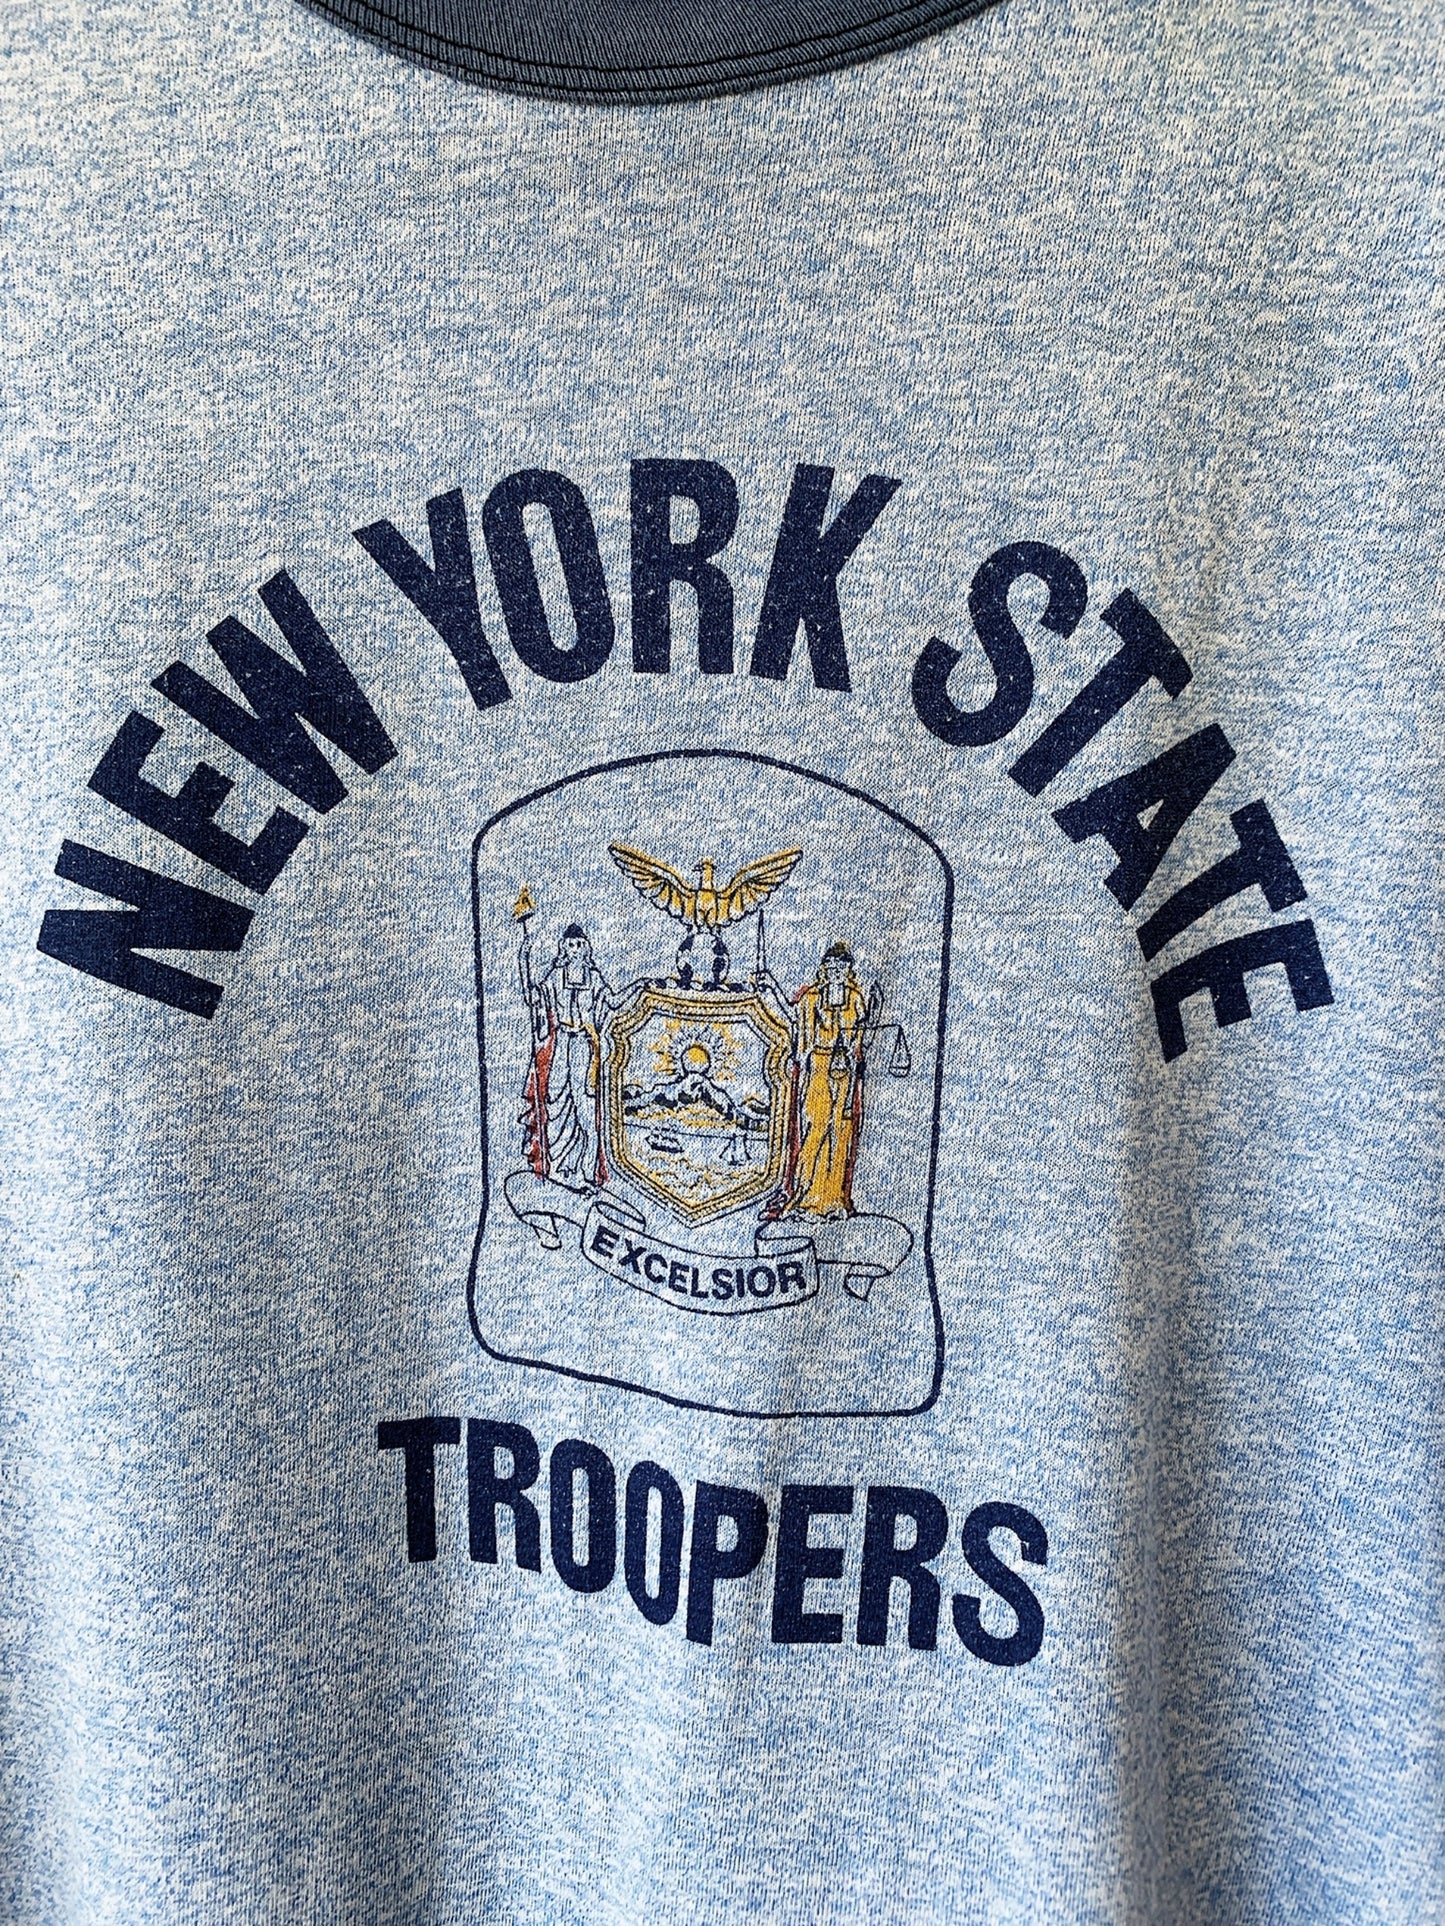 Vintage New York State Troopers Tee